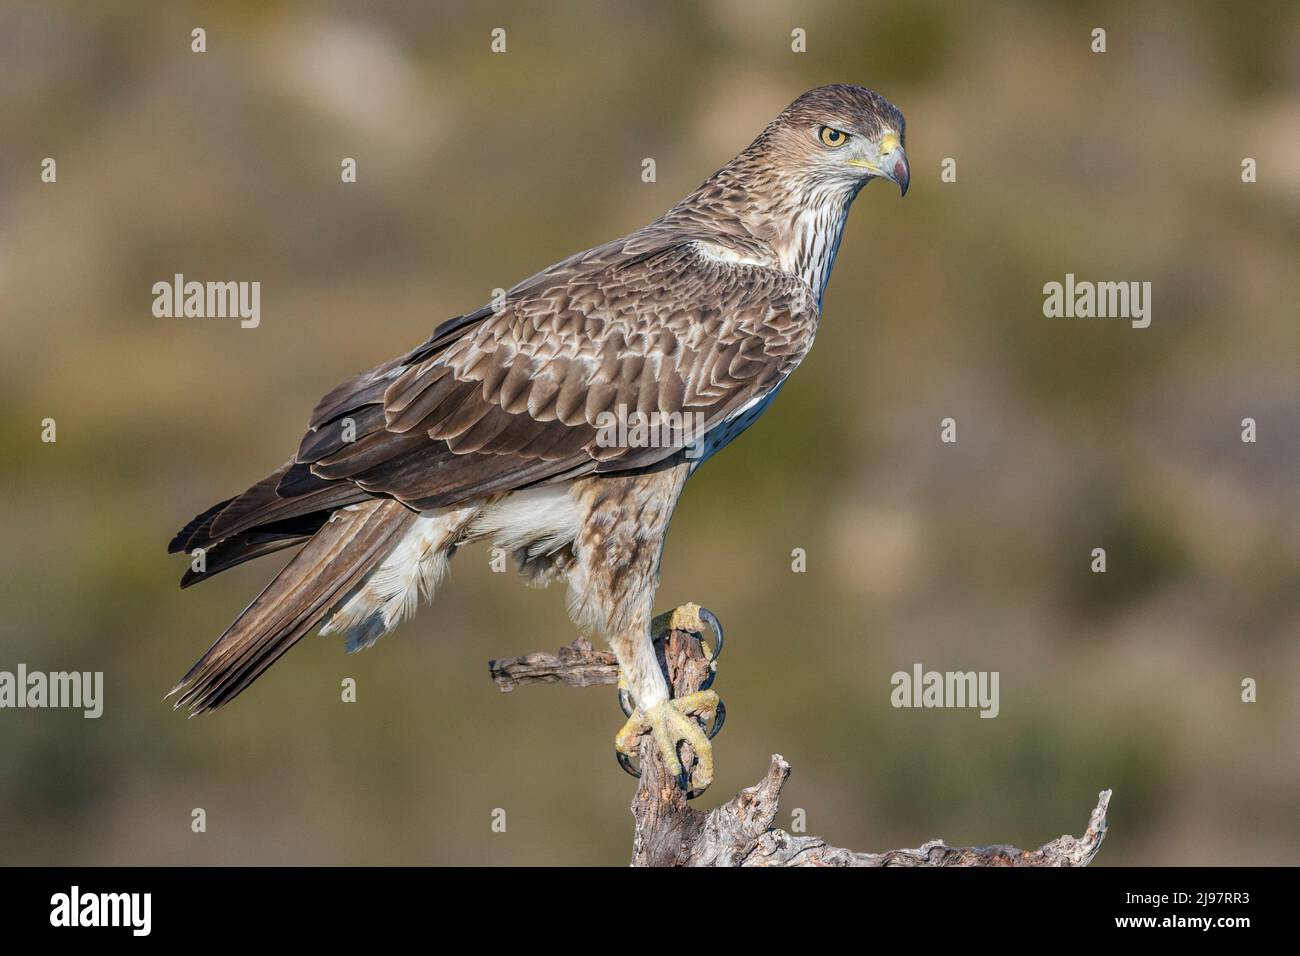 Bonelli's eagle, Aquila fasciata, perched on a branch, Comunidad valenciana, Spain Stock Photo